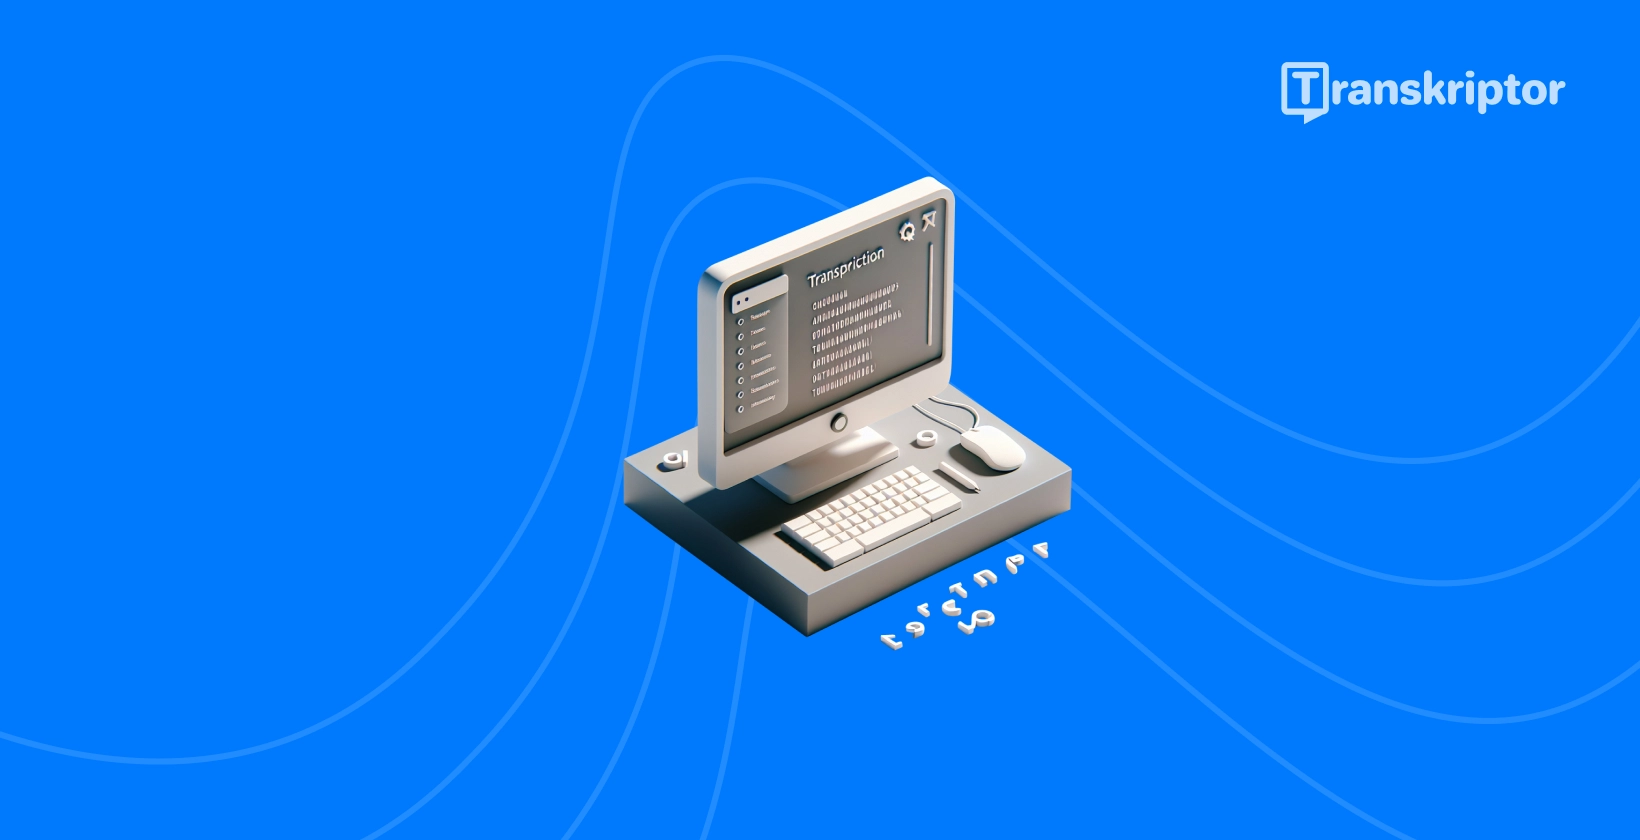 Μια απλοϊκή απεικόνιση του λογισμικού μεταγραφής ήχου MuseScore σε έναν επιτραπέζιο υπολογιστή.